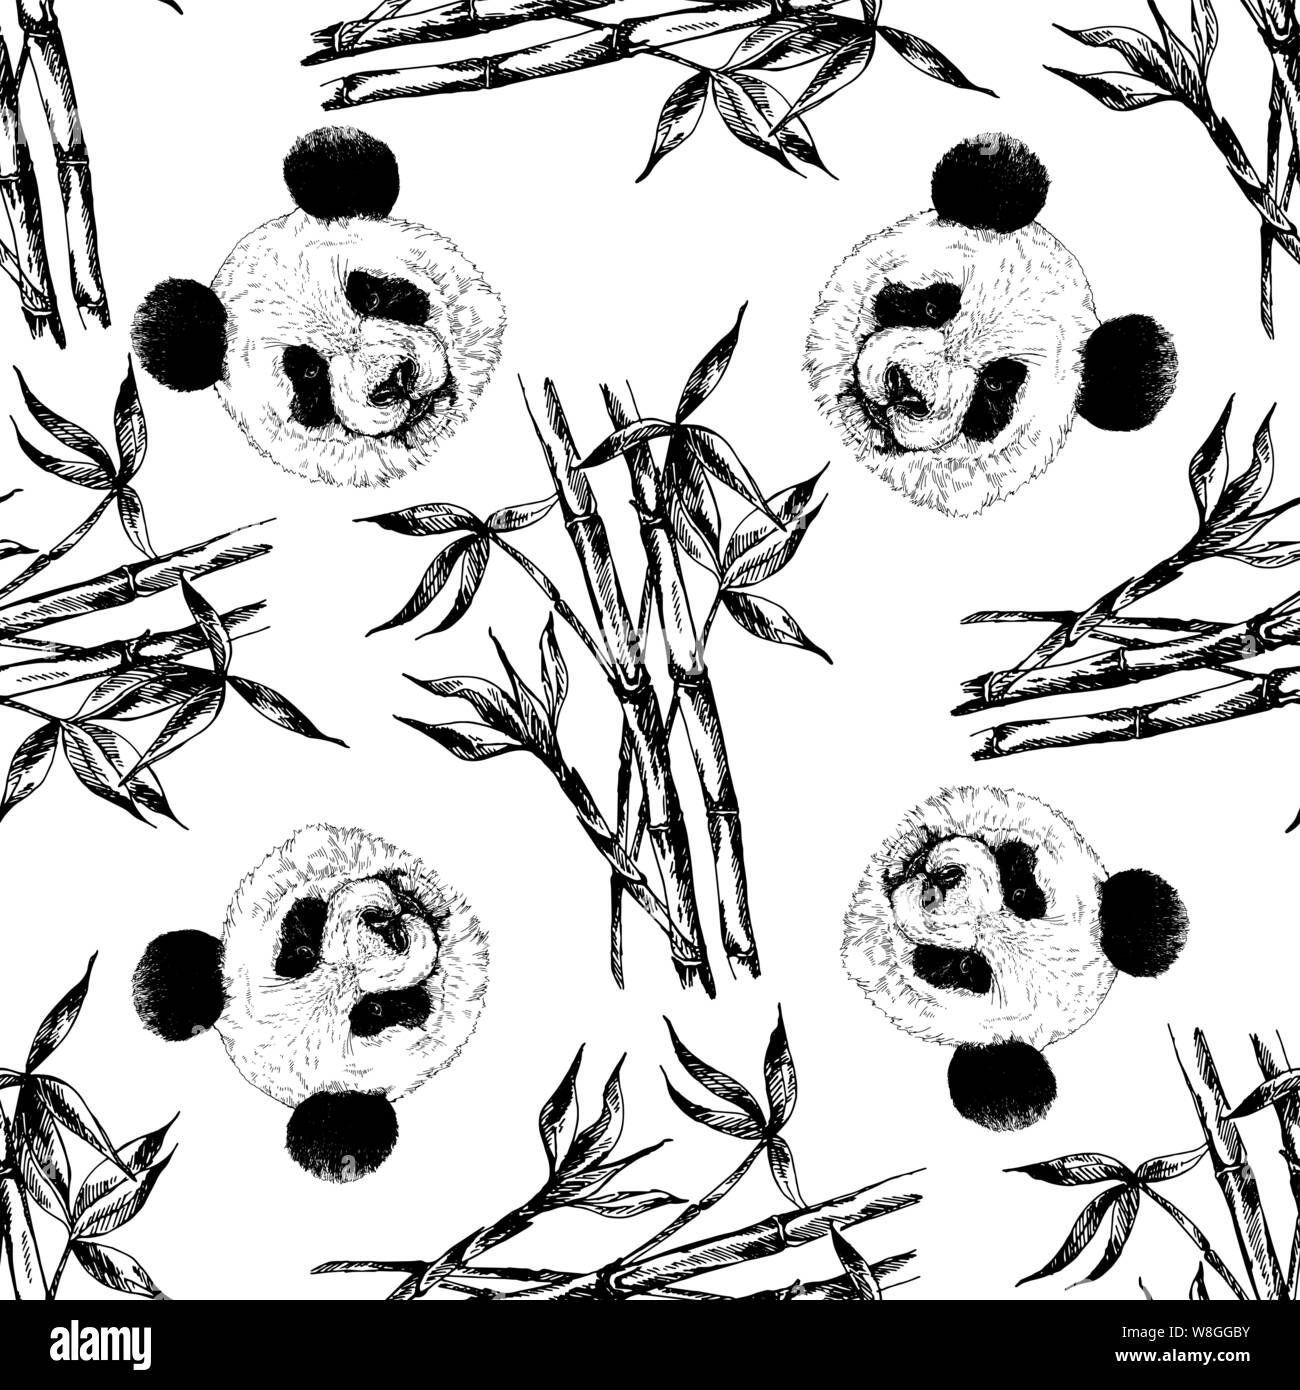 Nahtlose Muster von Hand gezeichnete Skizze stil Pandas und Bambus Stängel und Blätter auf weißem Hintergrund. Vector Illustration. Stock Vektor